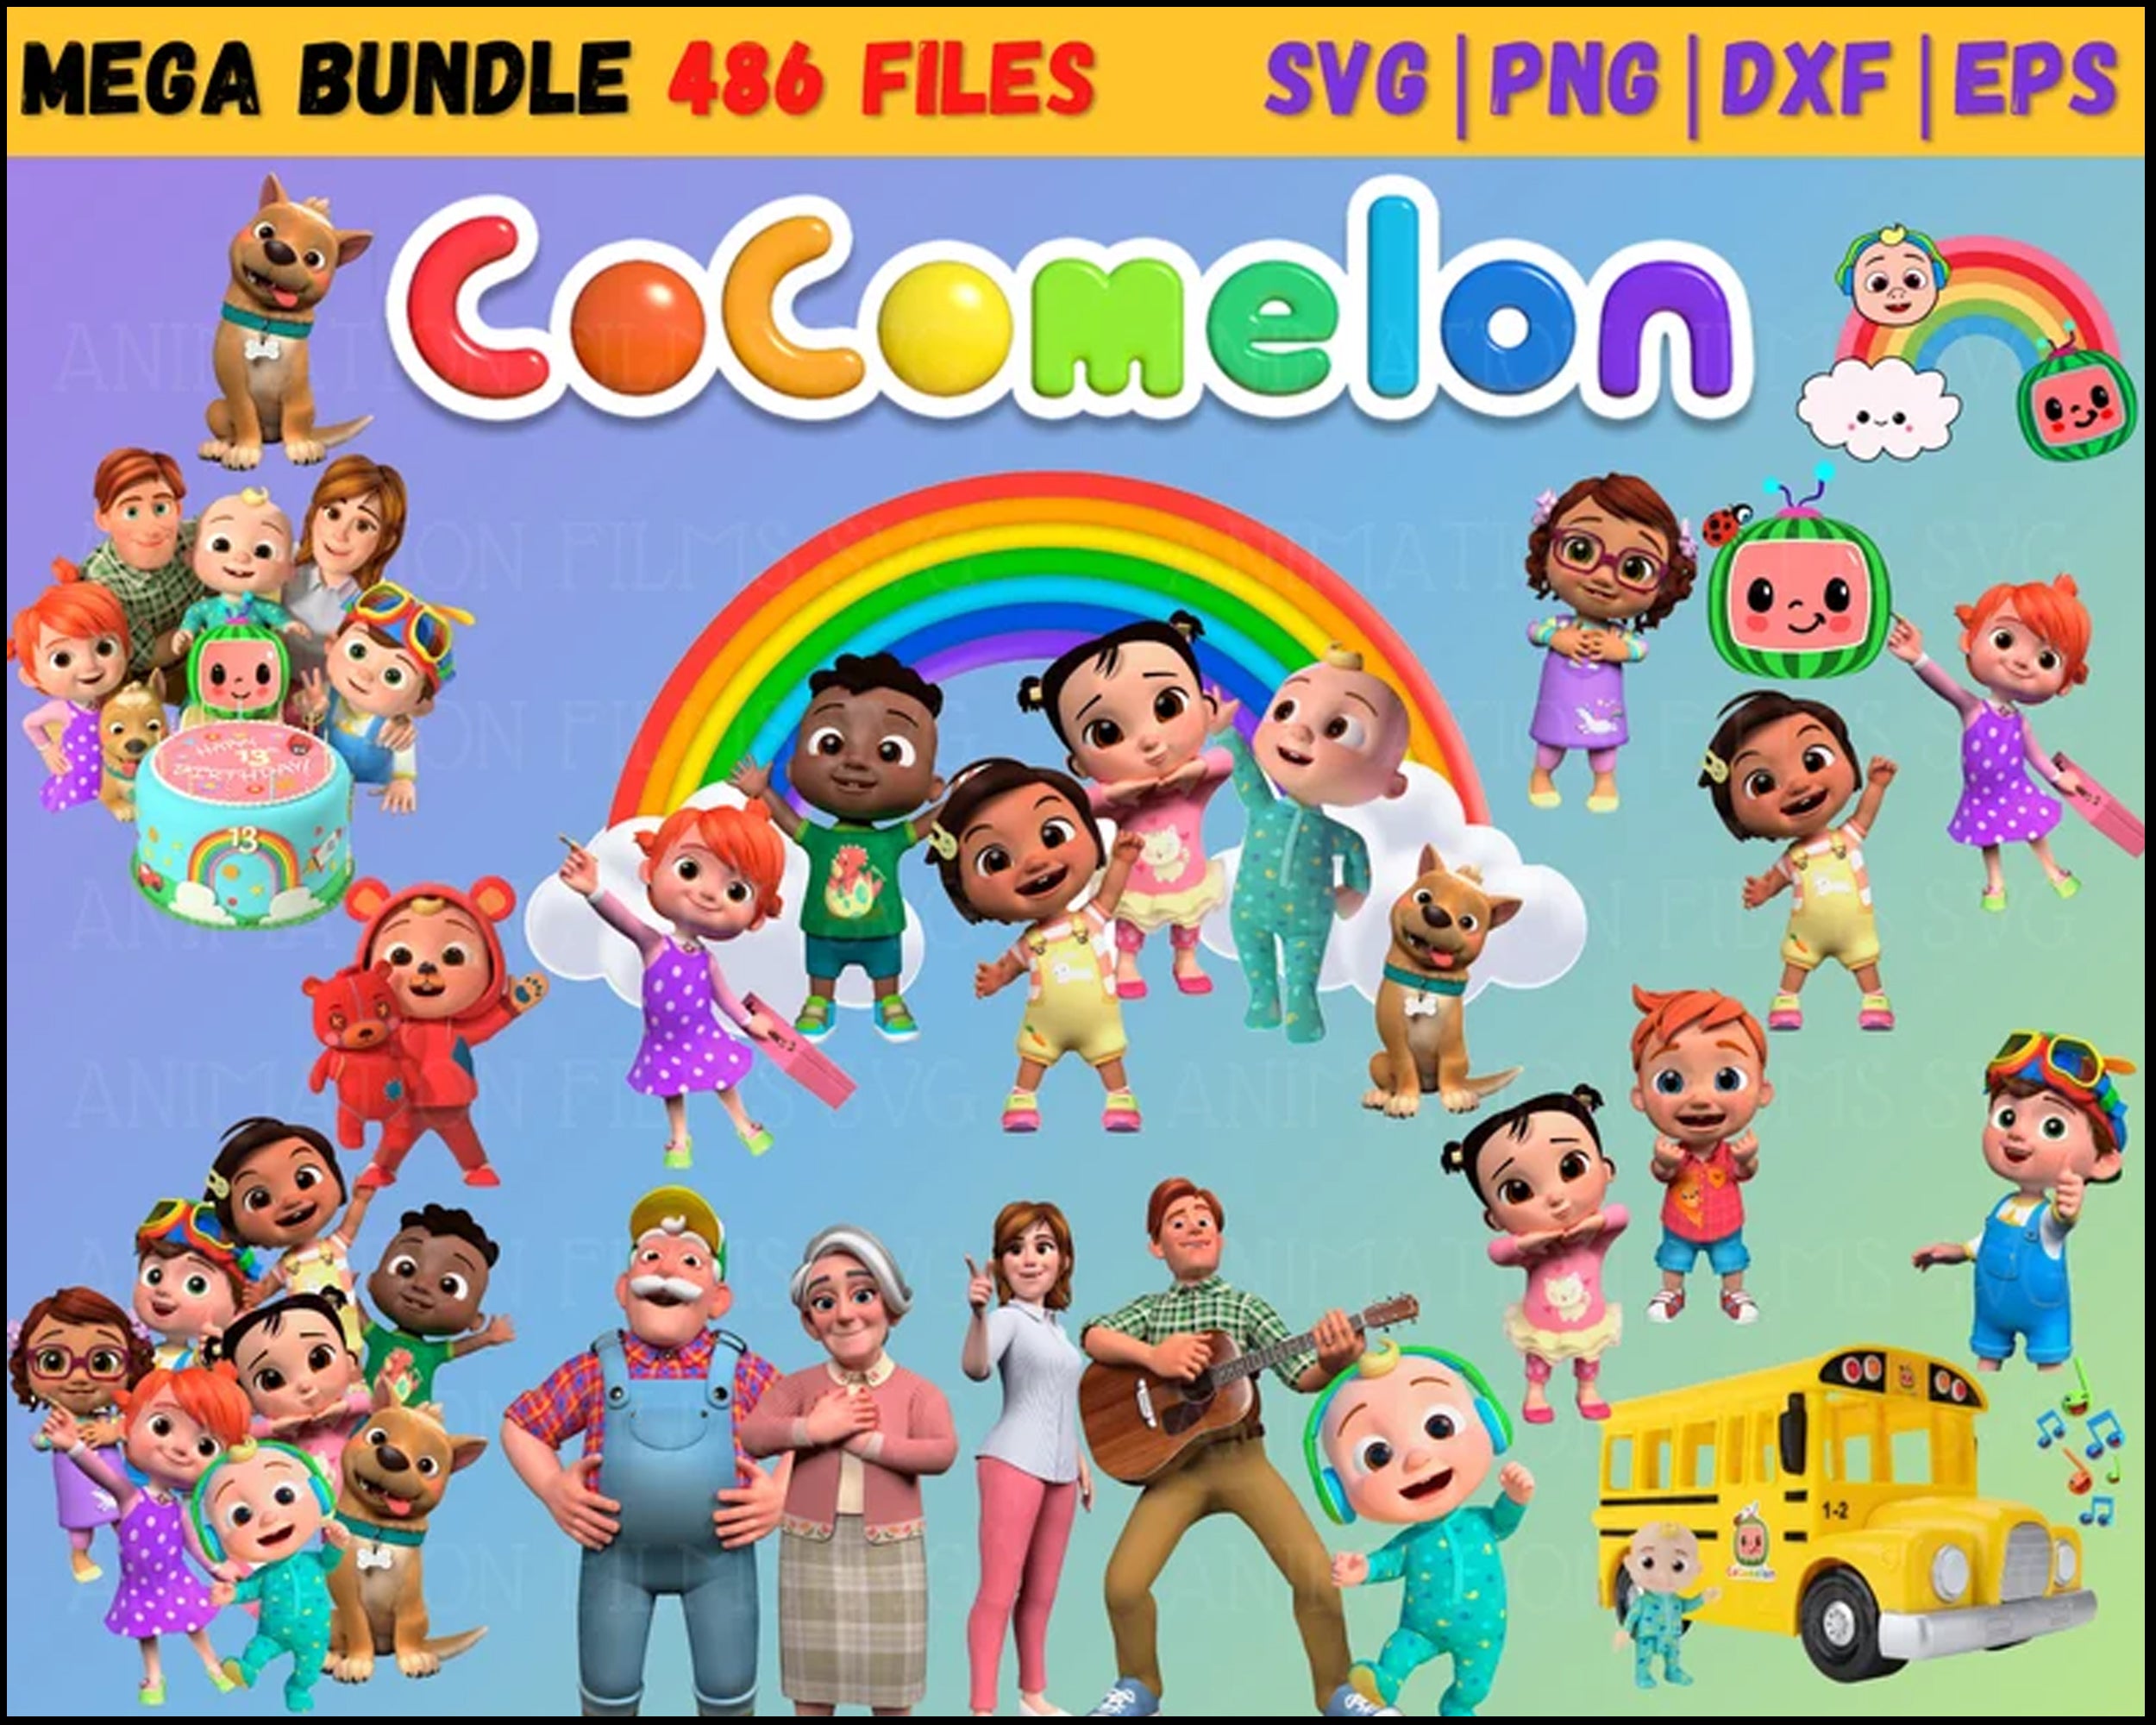 Cocomelon Svg bundle, Cocomelon Png, Cocomelon, Cocomelon Birthday, Cocomelon Invitation, Layered, Silhouette